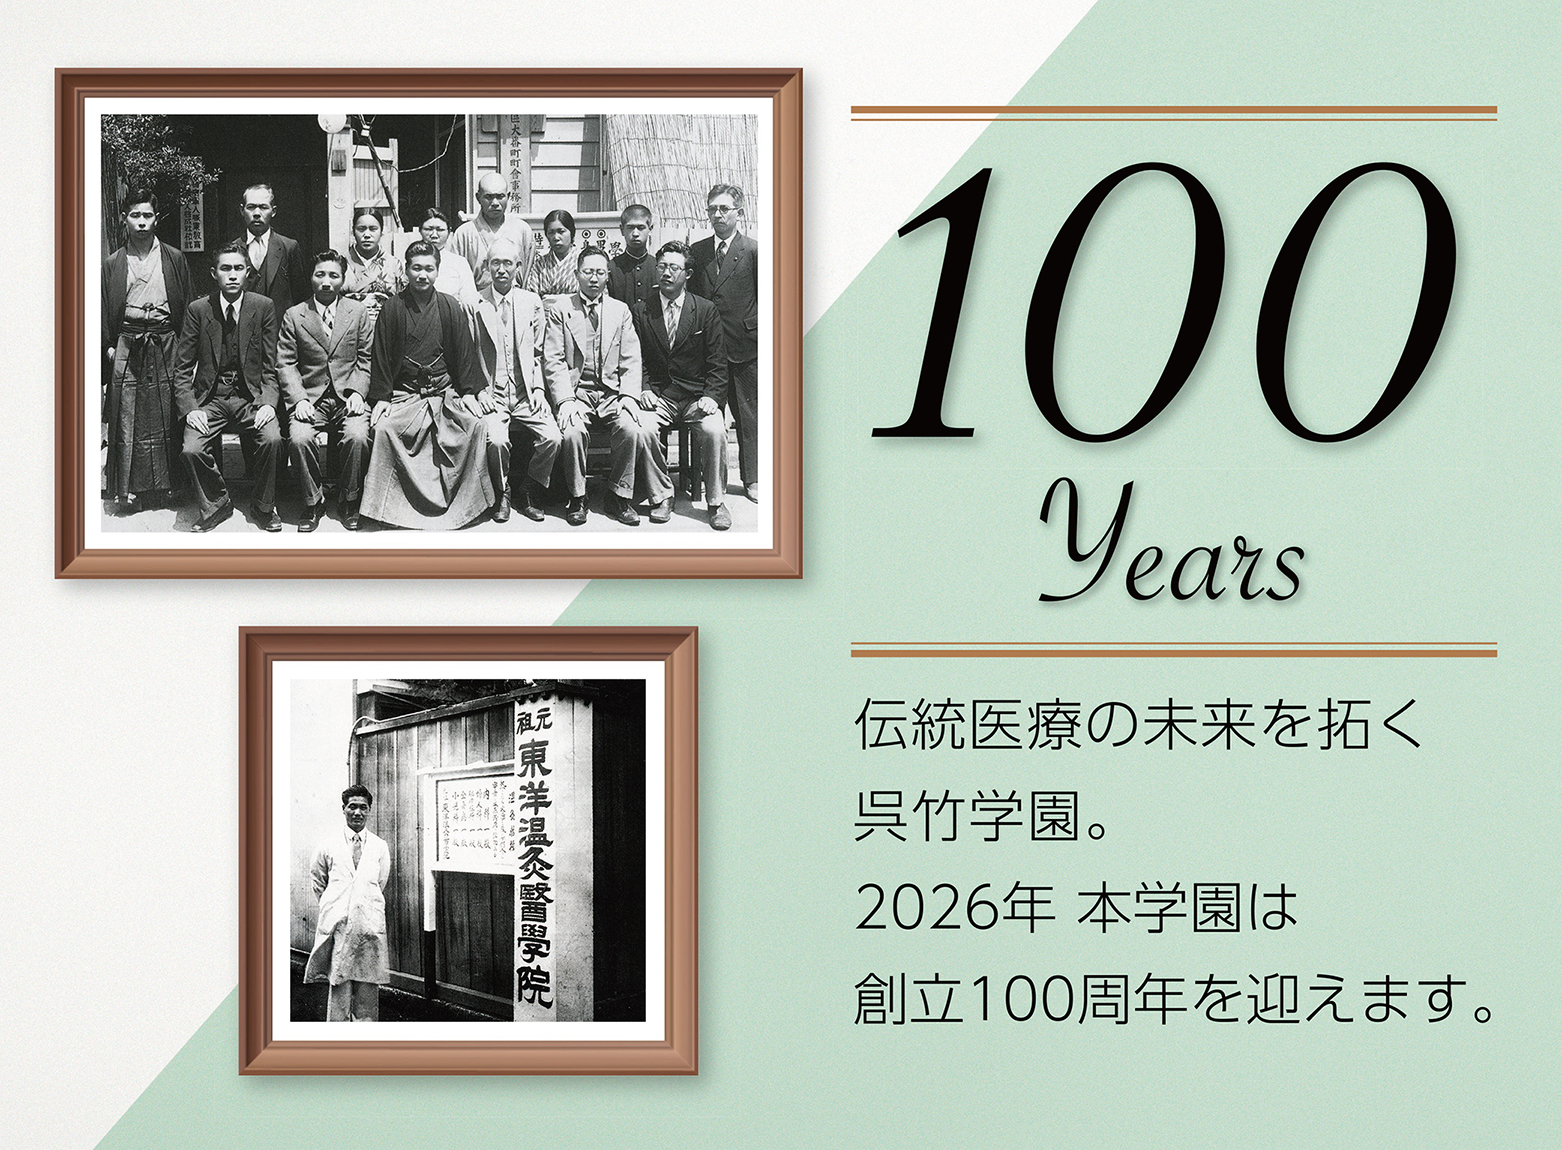 90余年の歴史、伝統医療の未来を拓く呉竹学園。